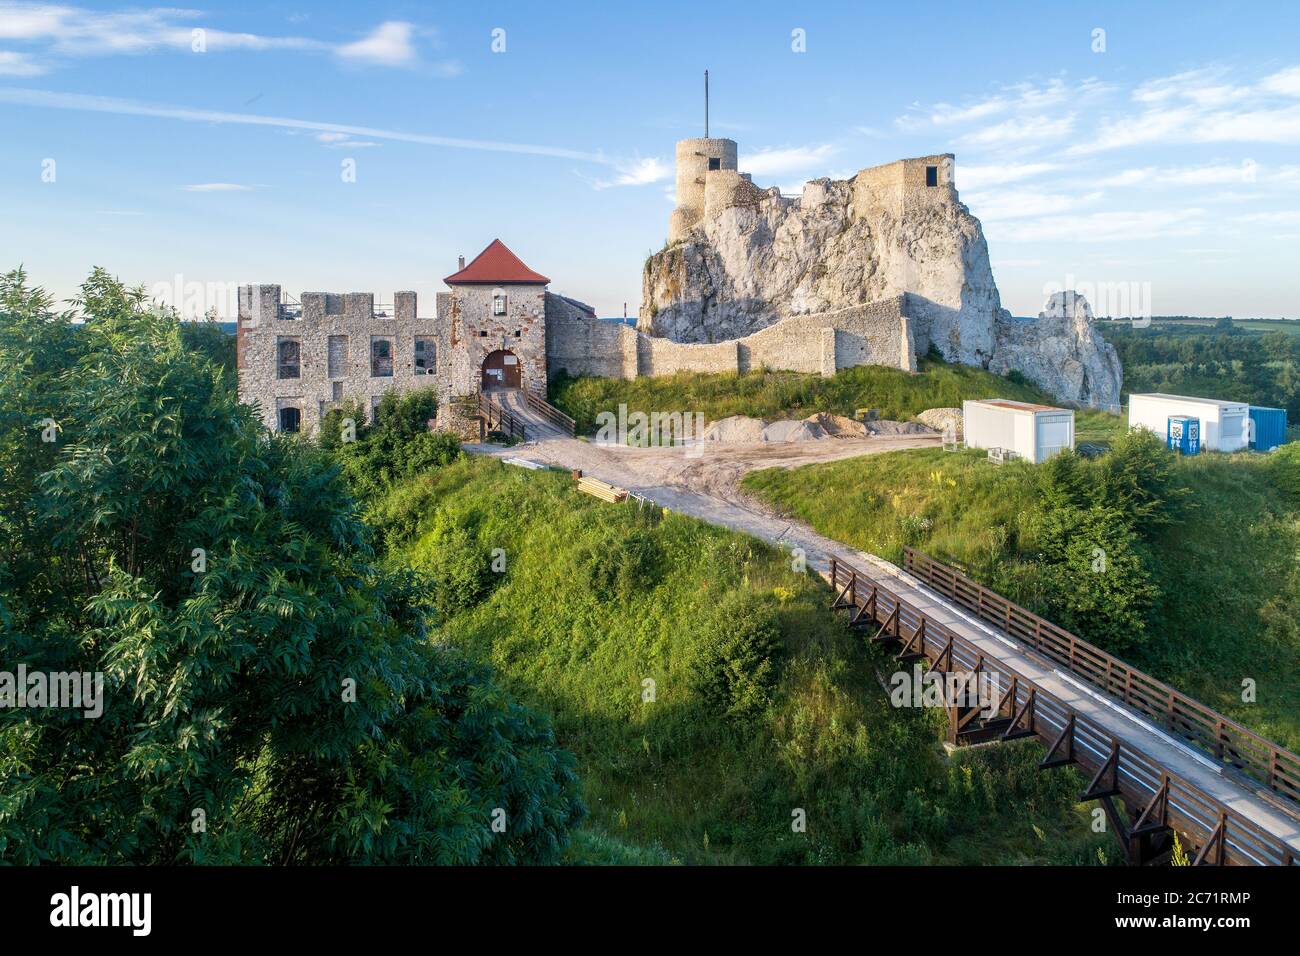 Rabsztyn, Pologne. Ruines du château royal médiéval sur la roche dans les Highlands jurassiques polonais. Vue aérienne en été, au lever du soleil Banque D'Images